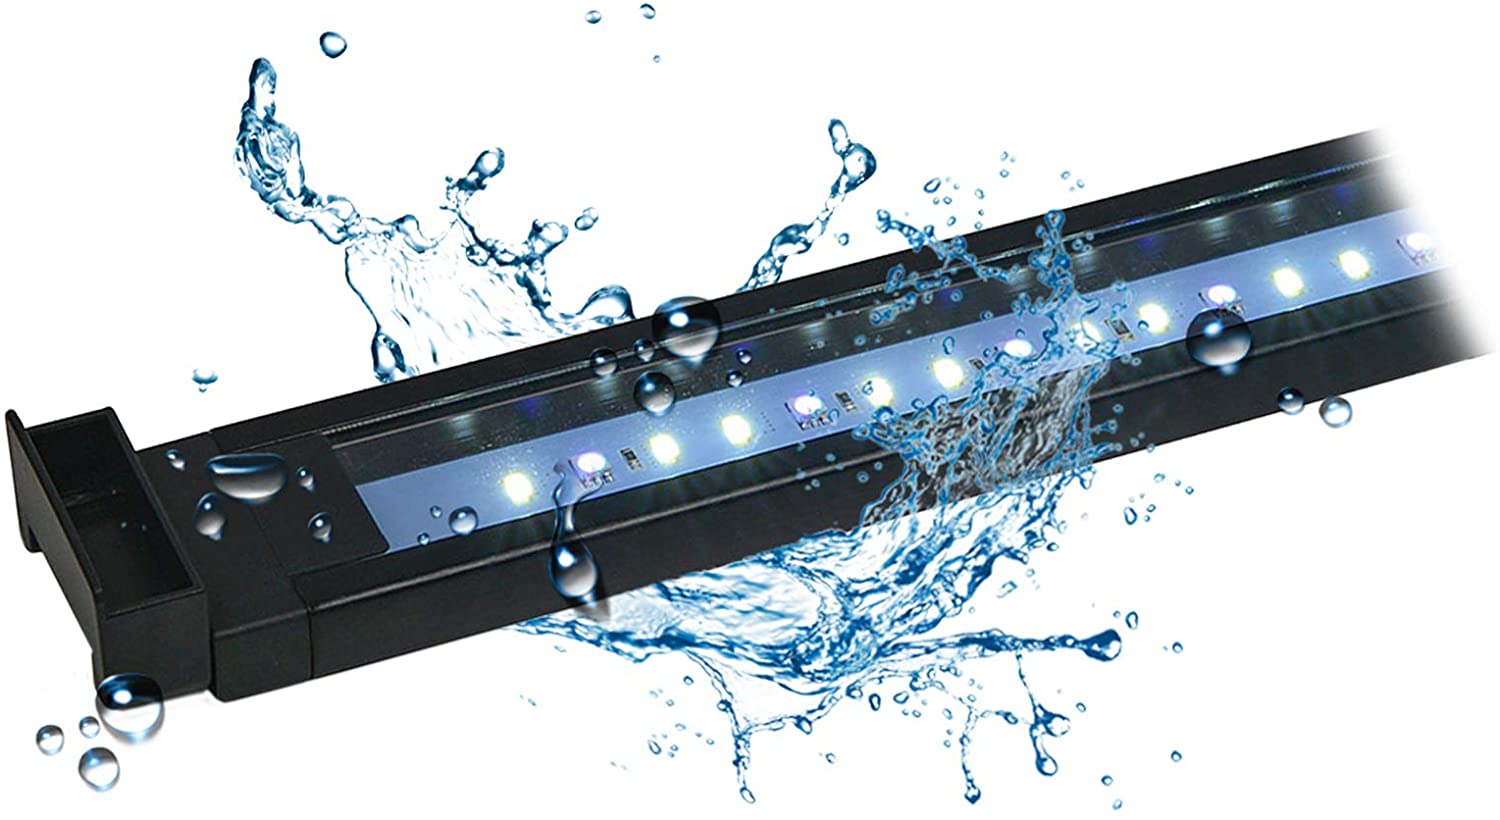 AquaSky LED 2.0 75 - 105cm